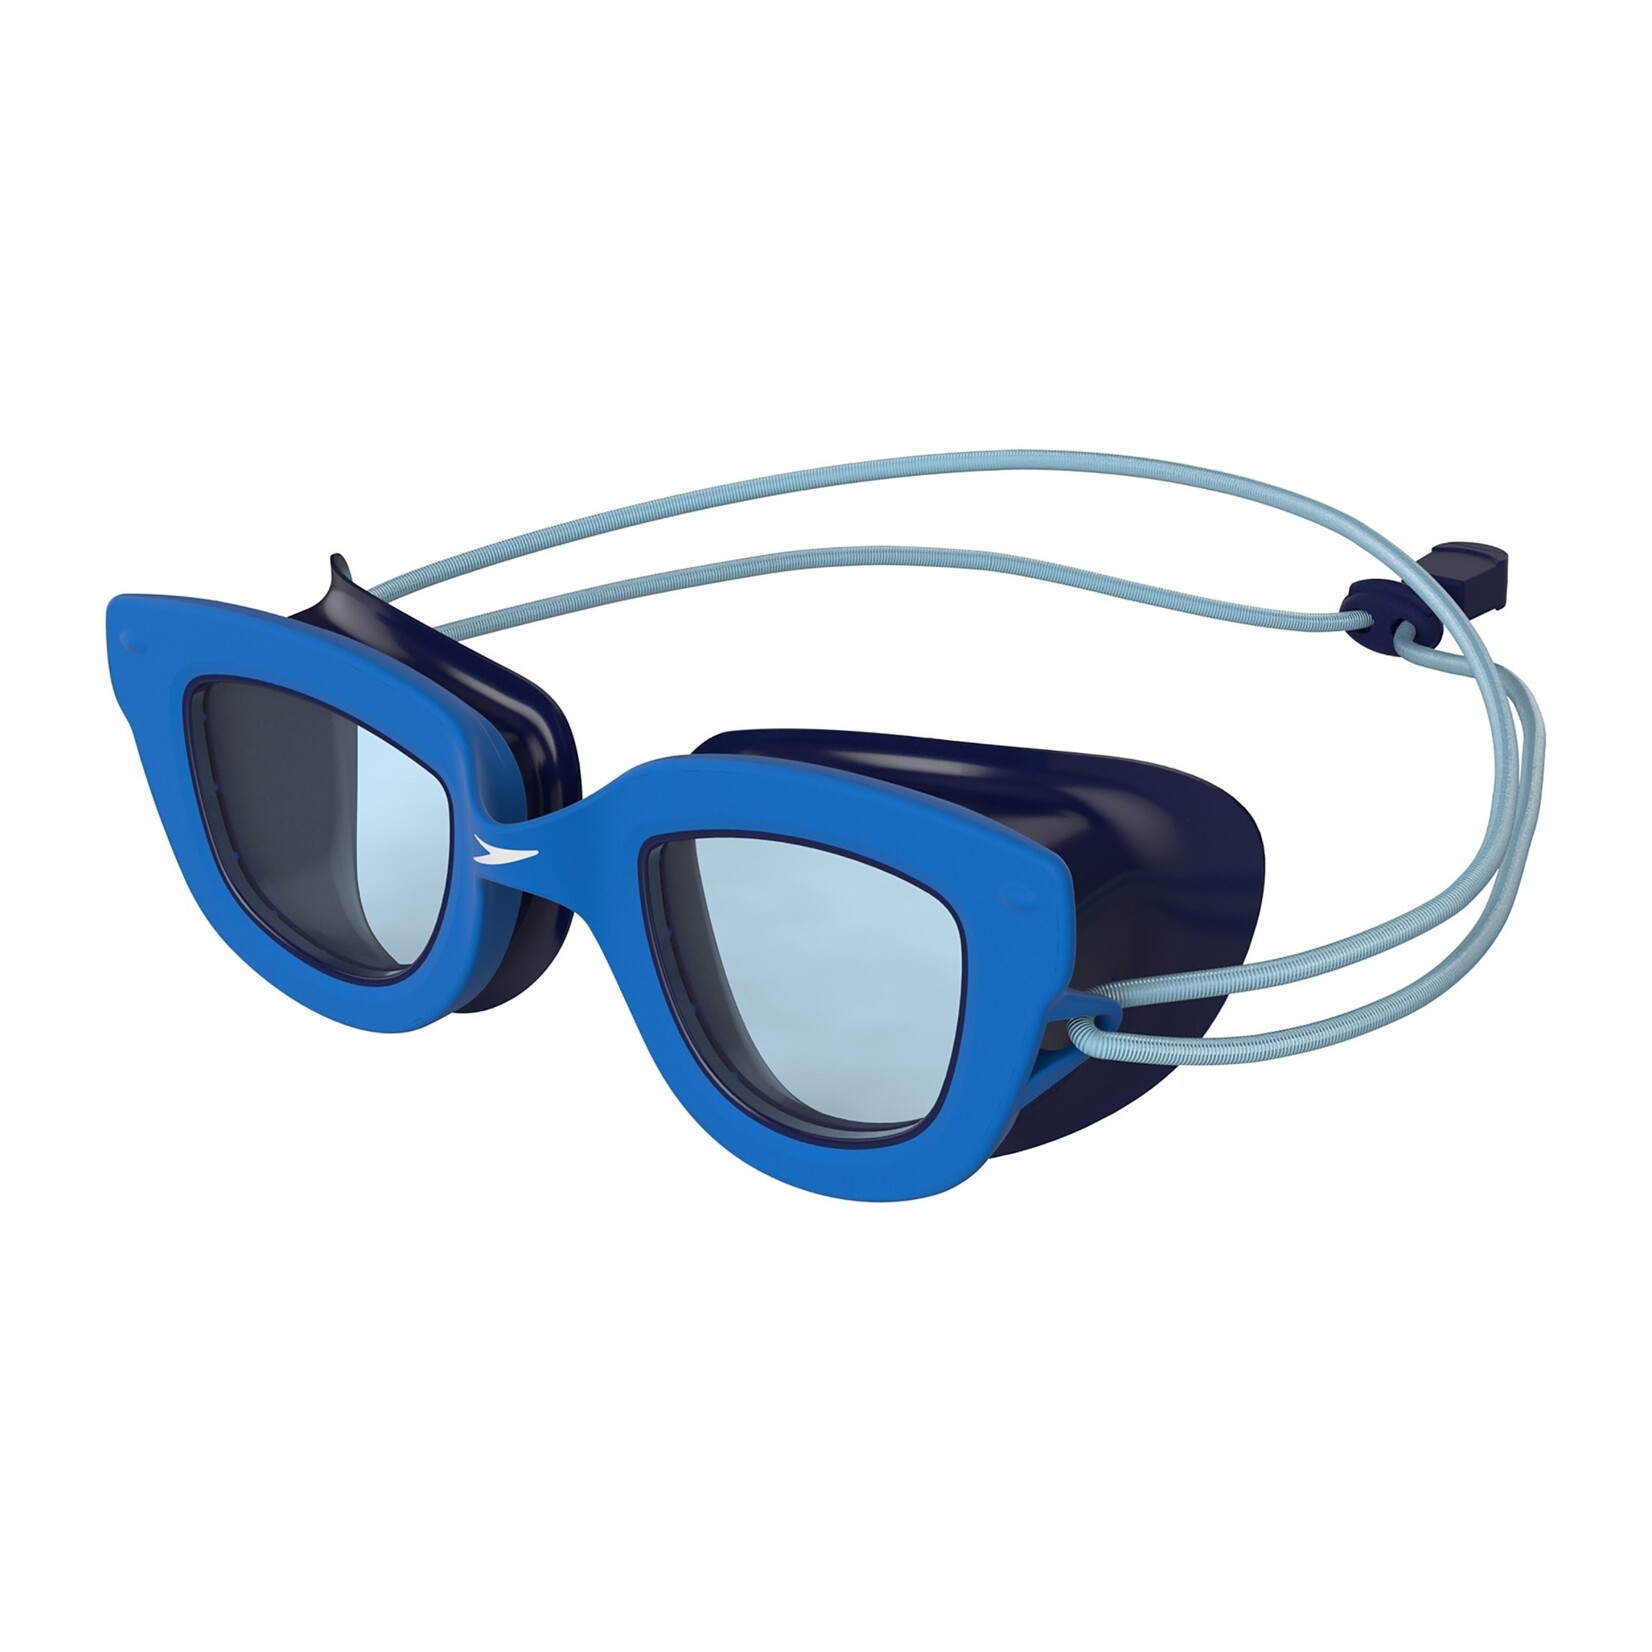 Speedo Speedo Swimming Goggles, Sunny G Seasiders, Kids